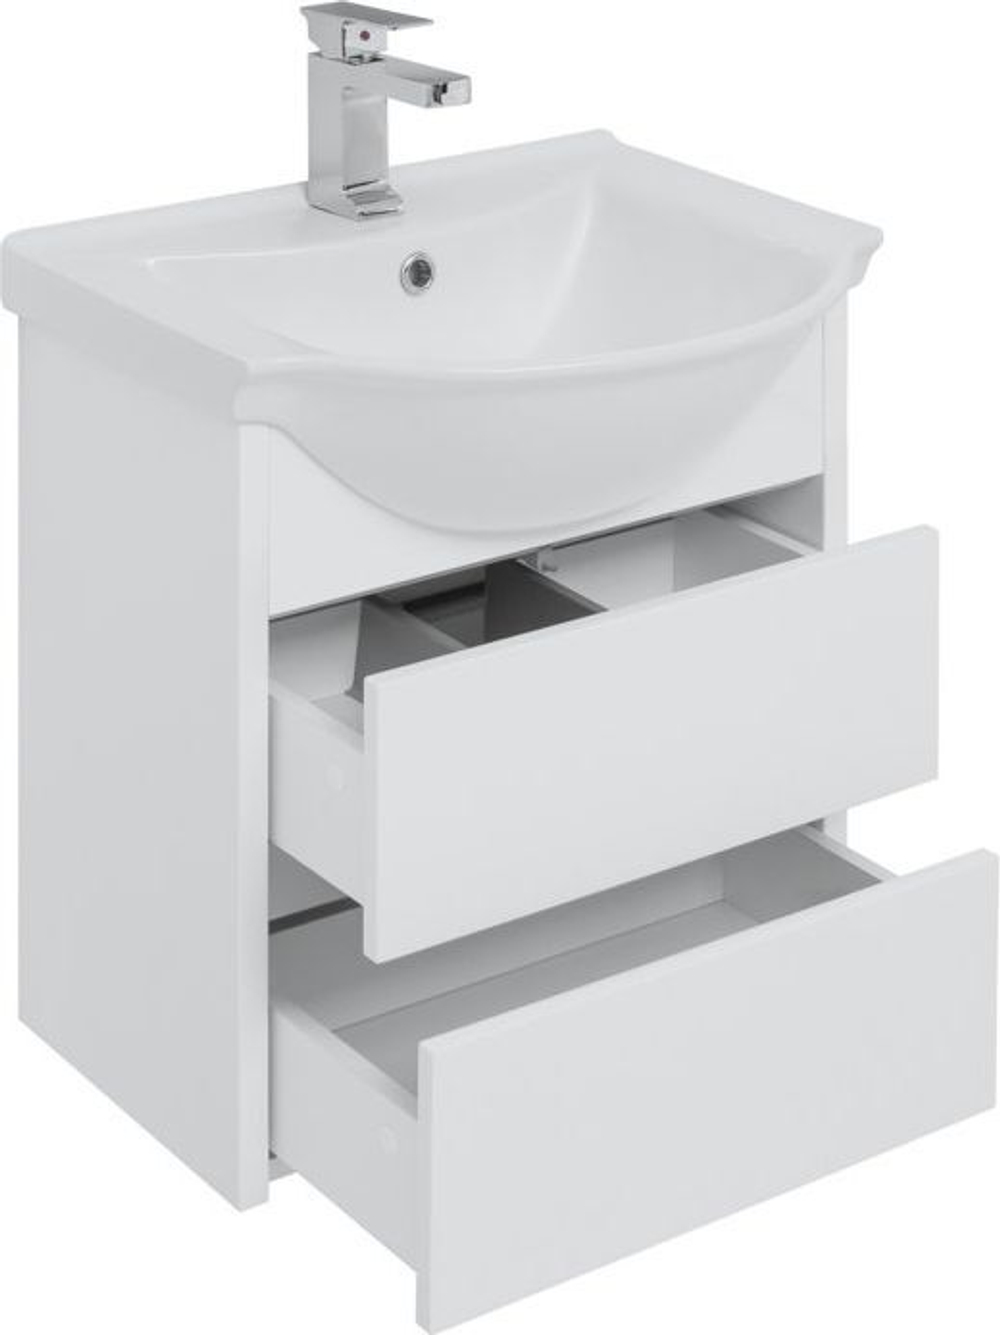 Мебель для ванной Aquanet Сидней 60 белый